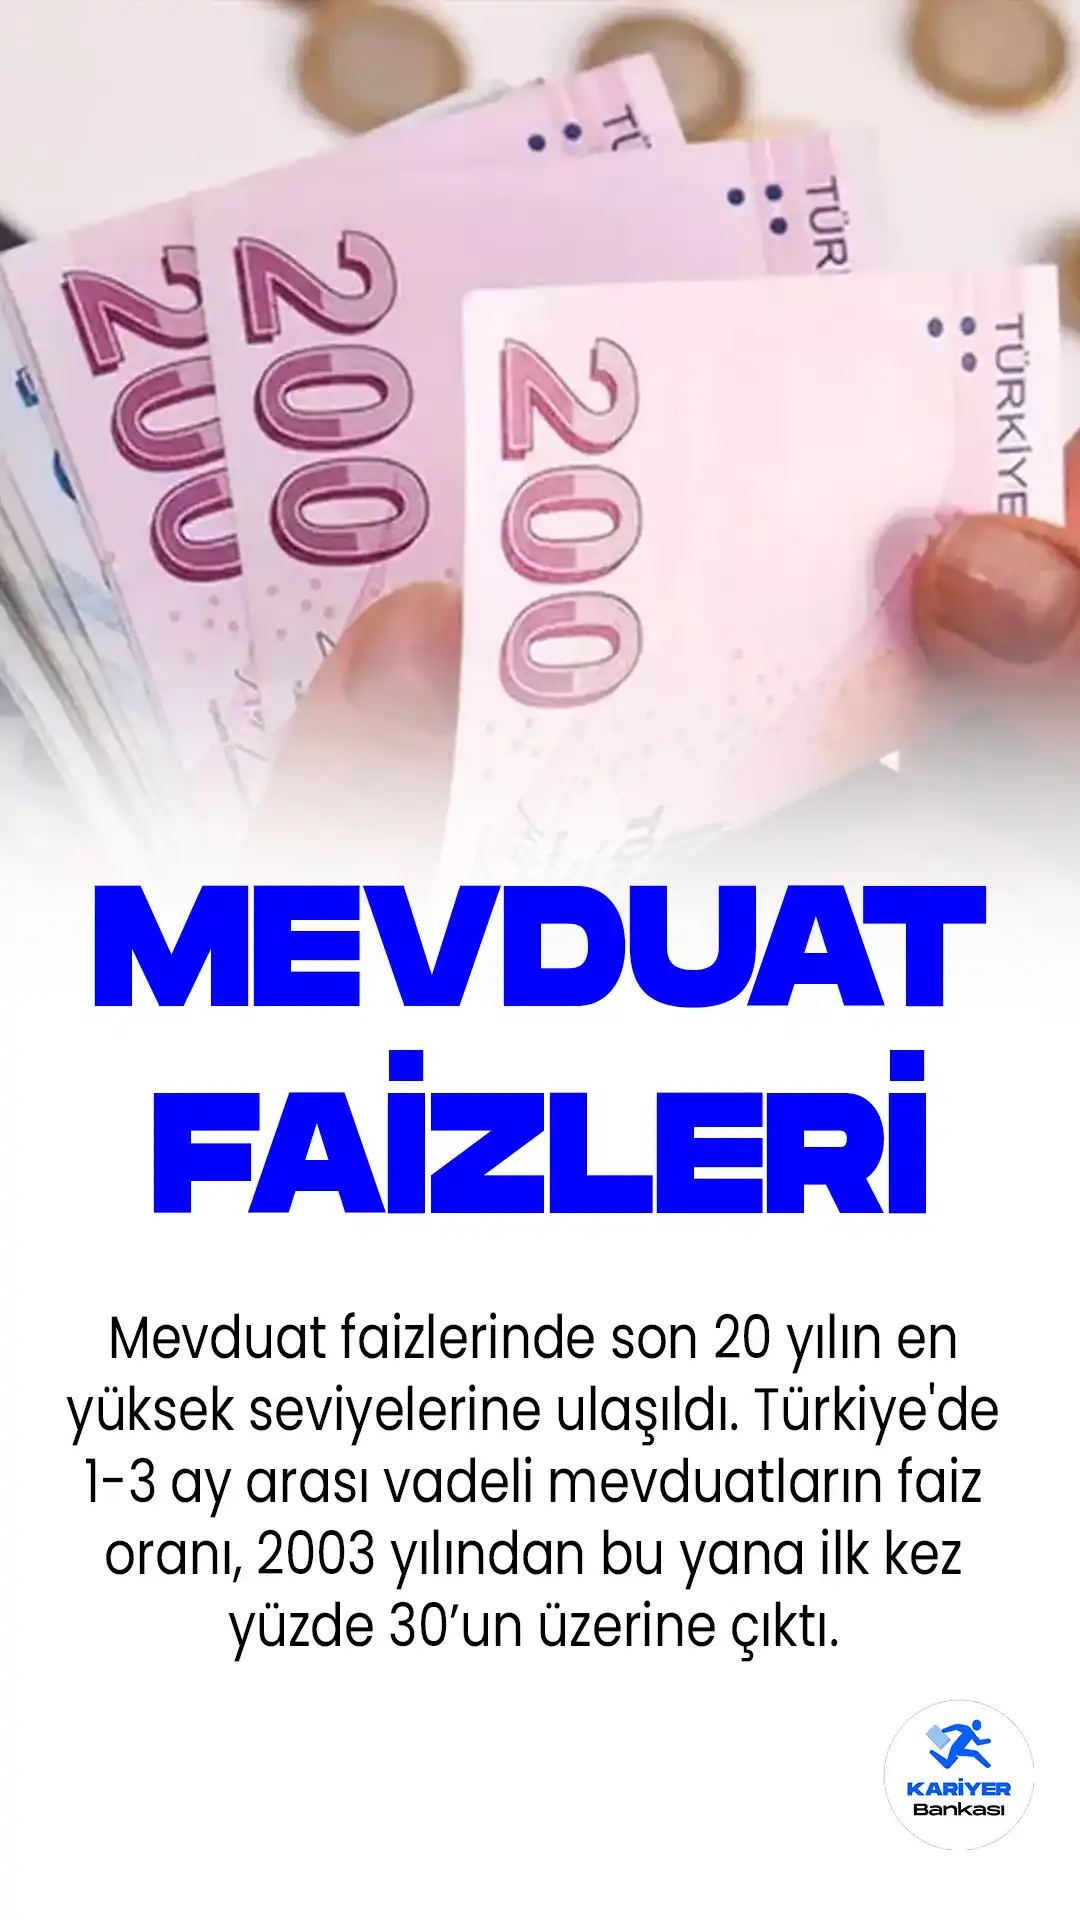 Mevduat faizlerinde son 20 yılın en yüksek seviyelerine ulaşıldığı gözlendi. Türkiye'de 1-3 ay arası vadeli mevduatların faiz oranı, 2003 yılından bu yana ilk kez yüzde 30’un üzerine çıktı.